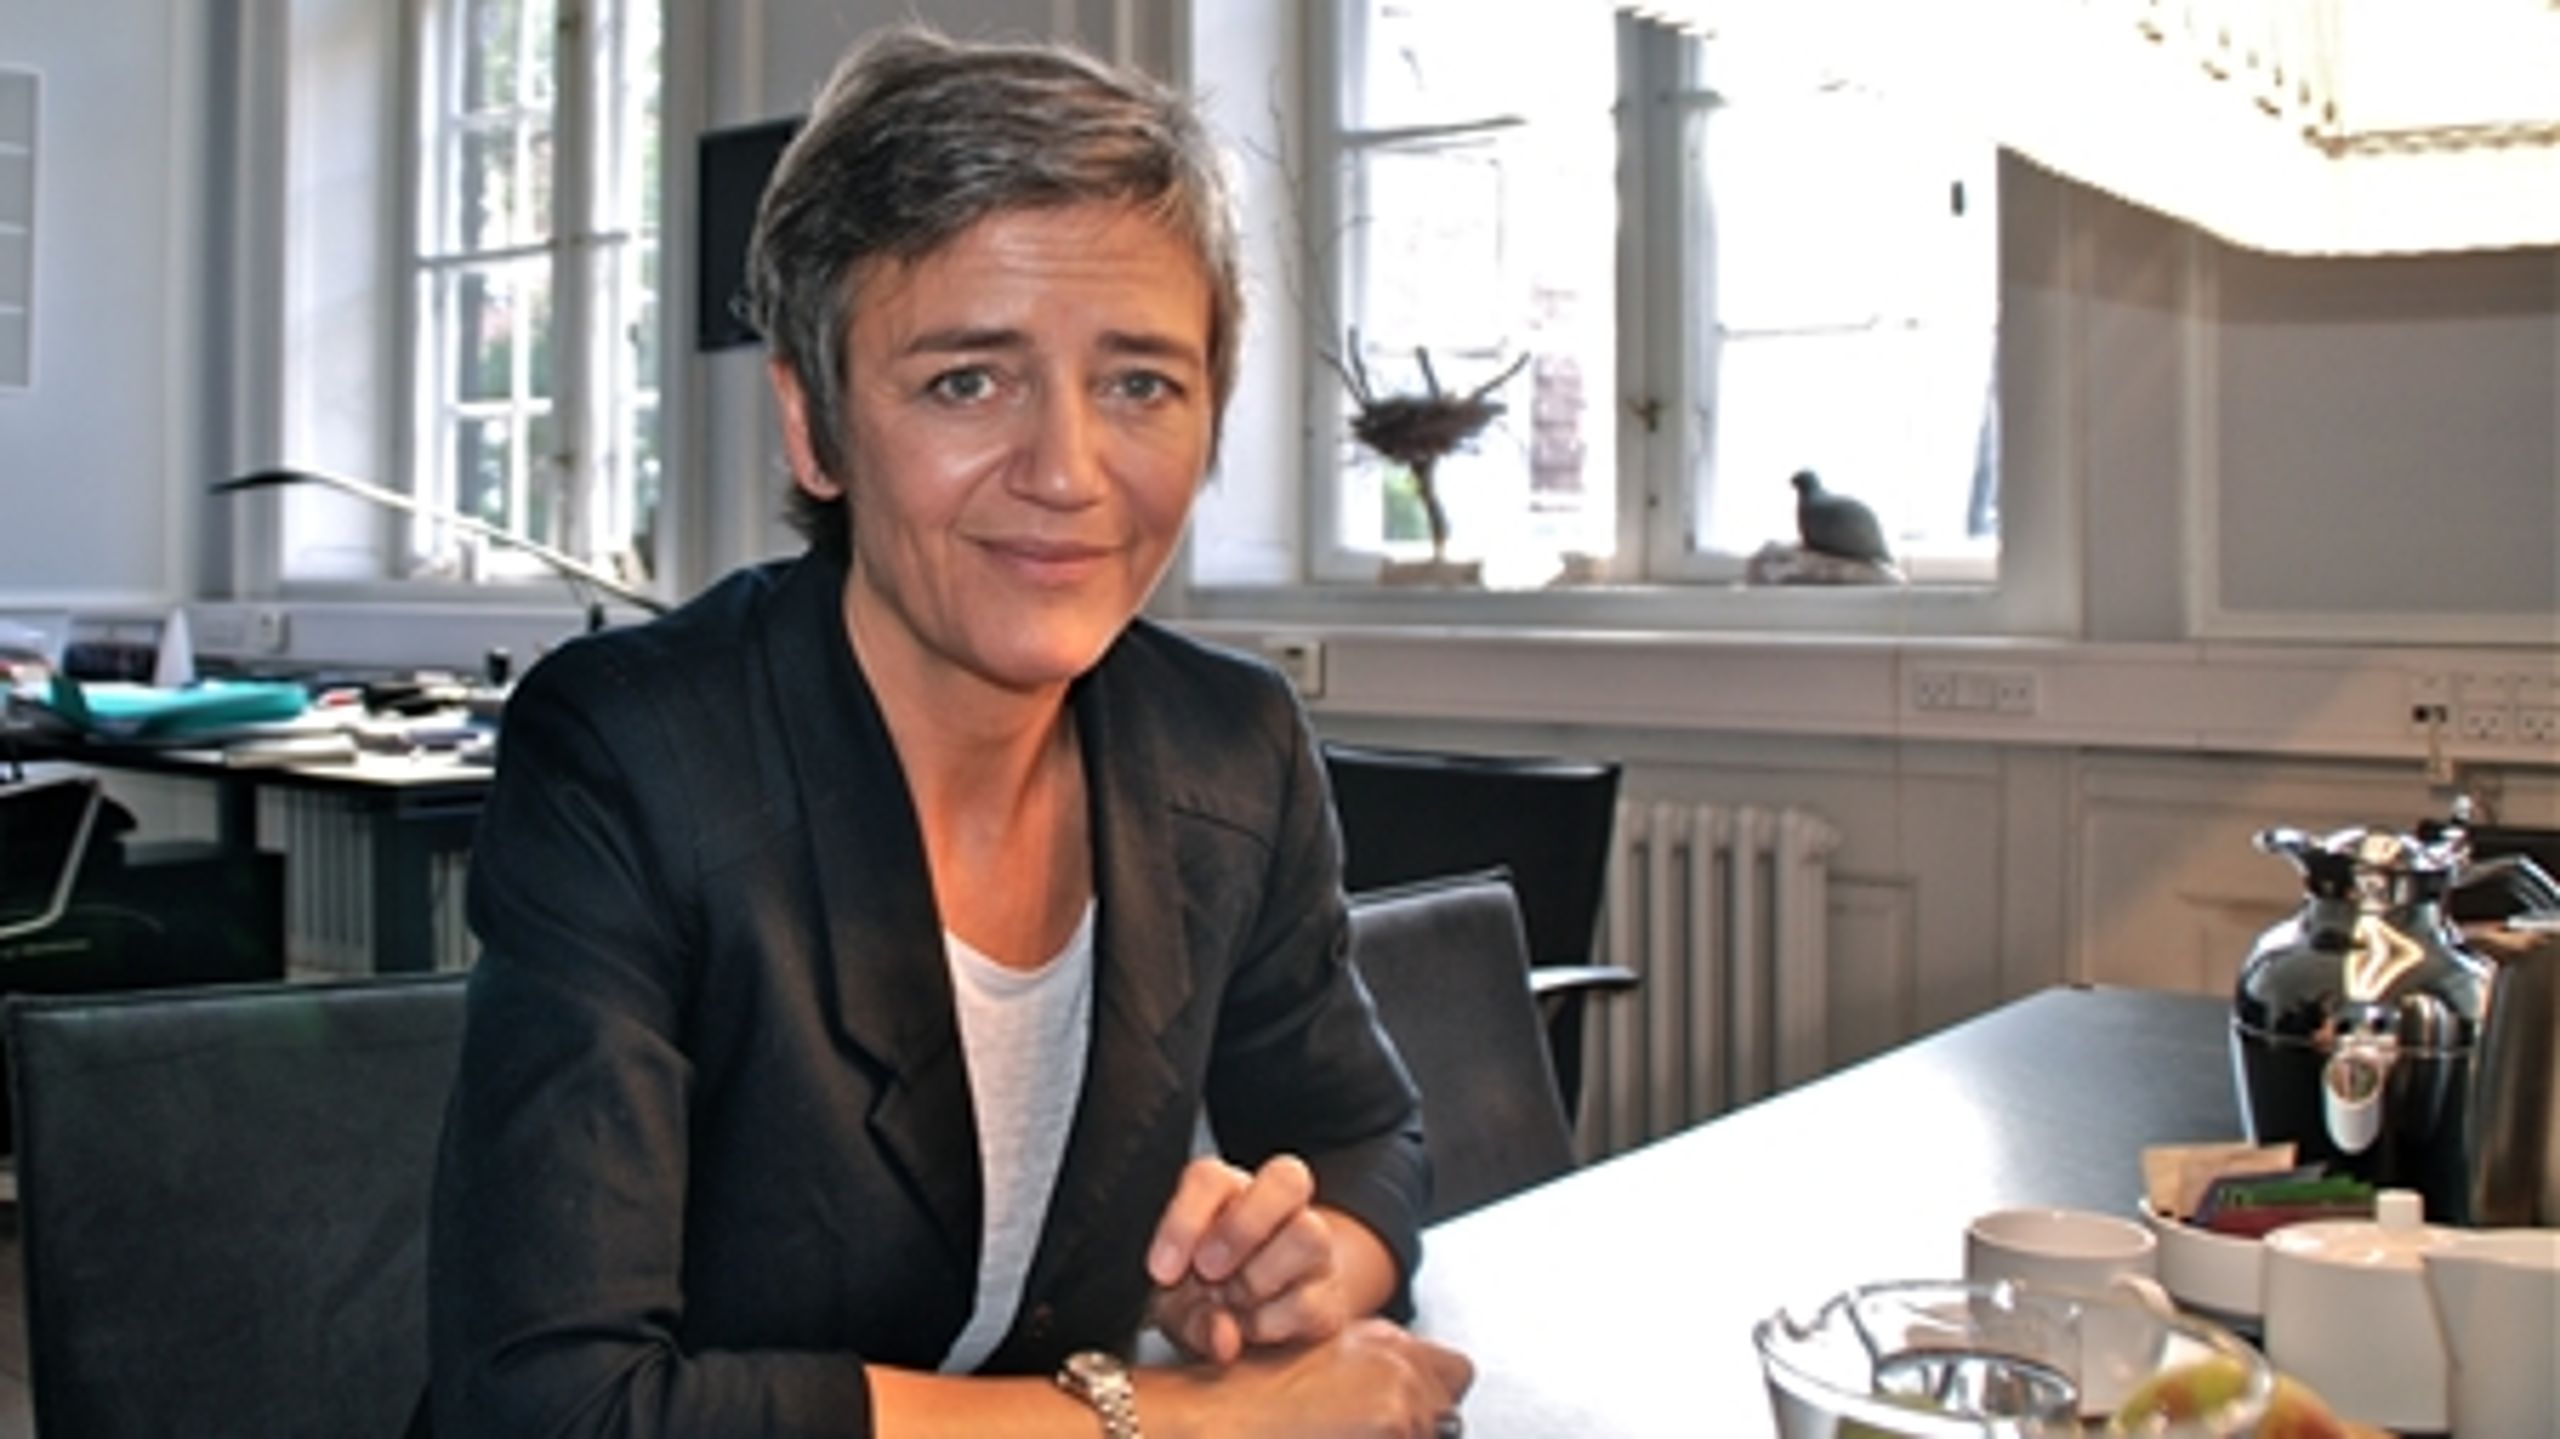 Margrethe Vestager får travlt det kommende år. Blandt andet forventer hun et opgør med de store kommuners magistratstyre inden kommunalvalget i slutningen af 2013. 